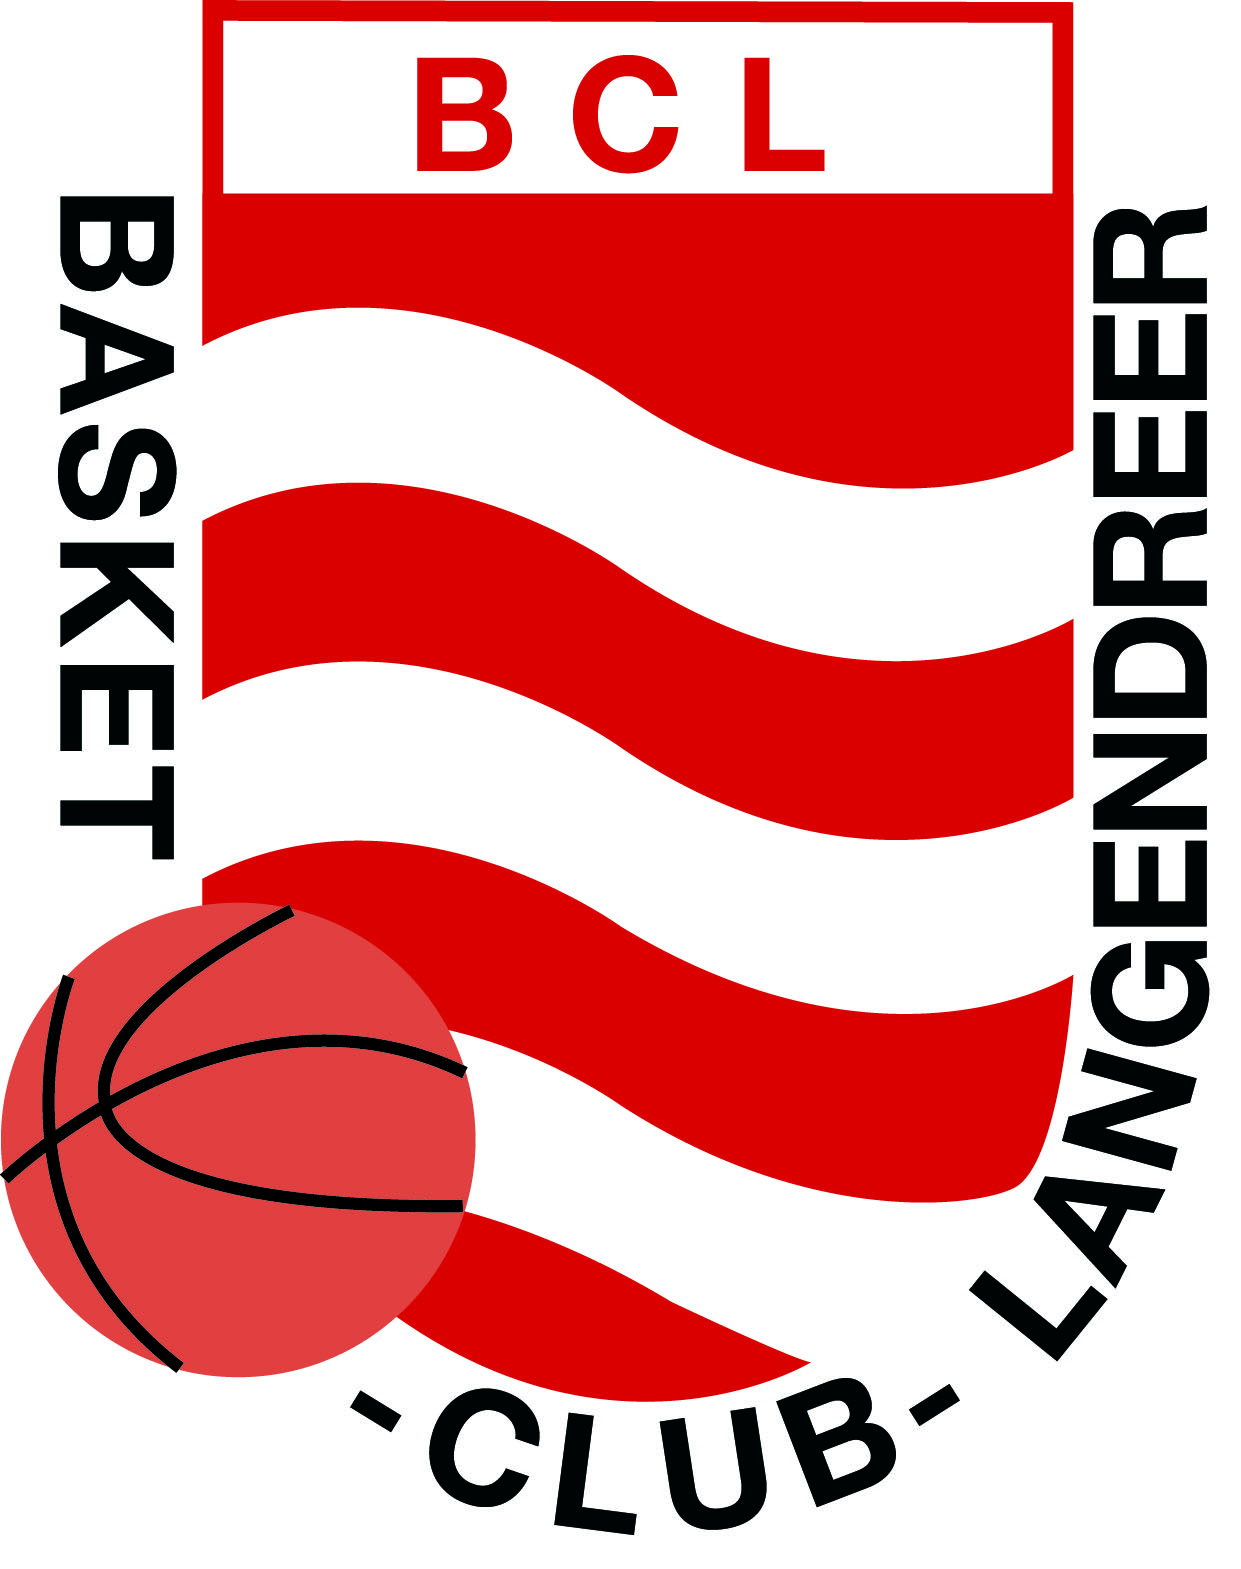 Saisoneröffnung 2018/ 19 in Langendreer am 29.09.2018